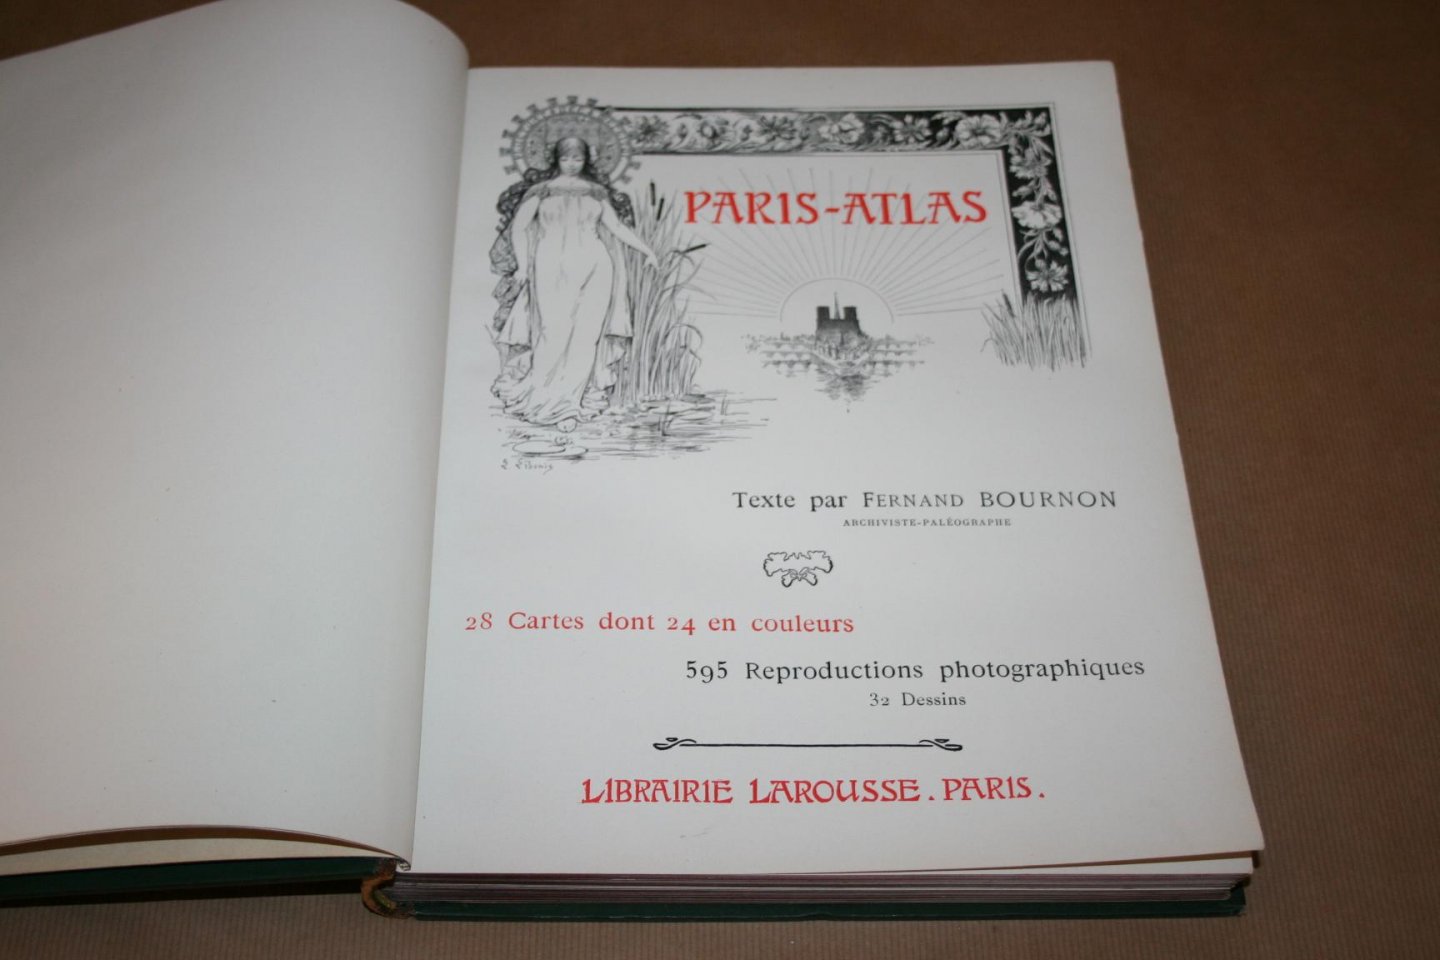 Fernand Bournon - Paris-Atlas  (28 Cartes dont 24 en couleurs - 595 Reproductions photographiques)